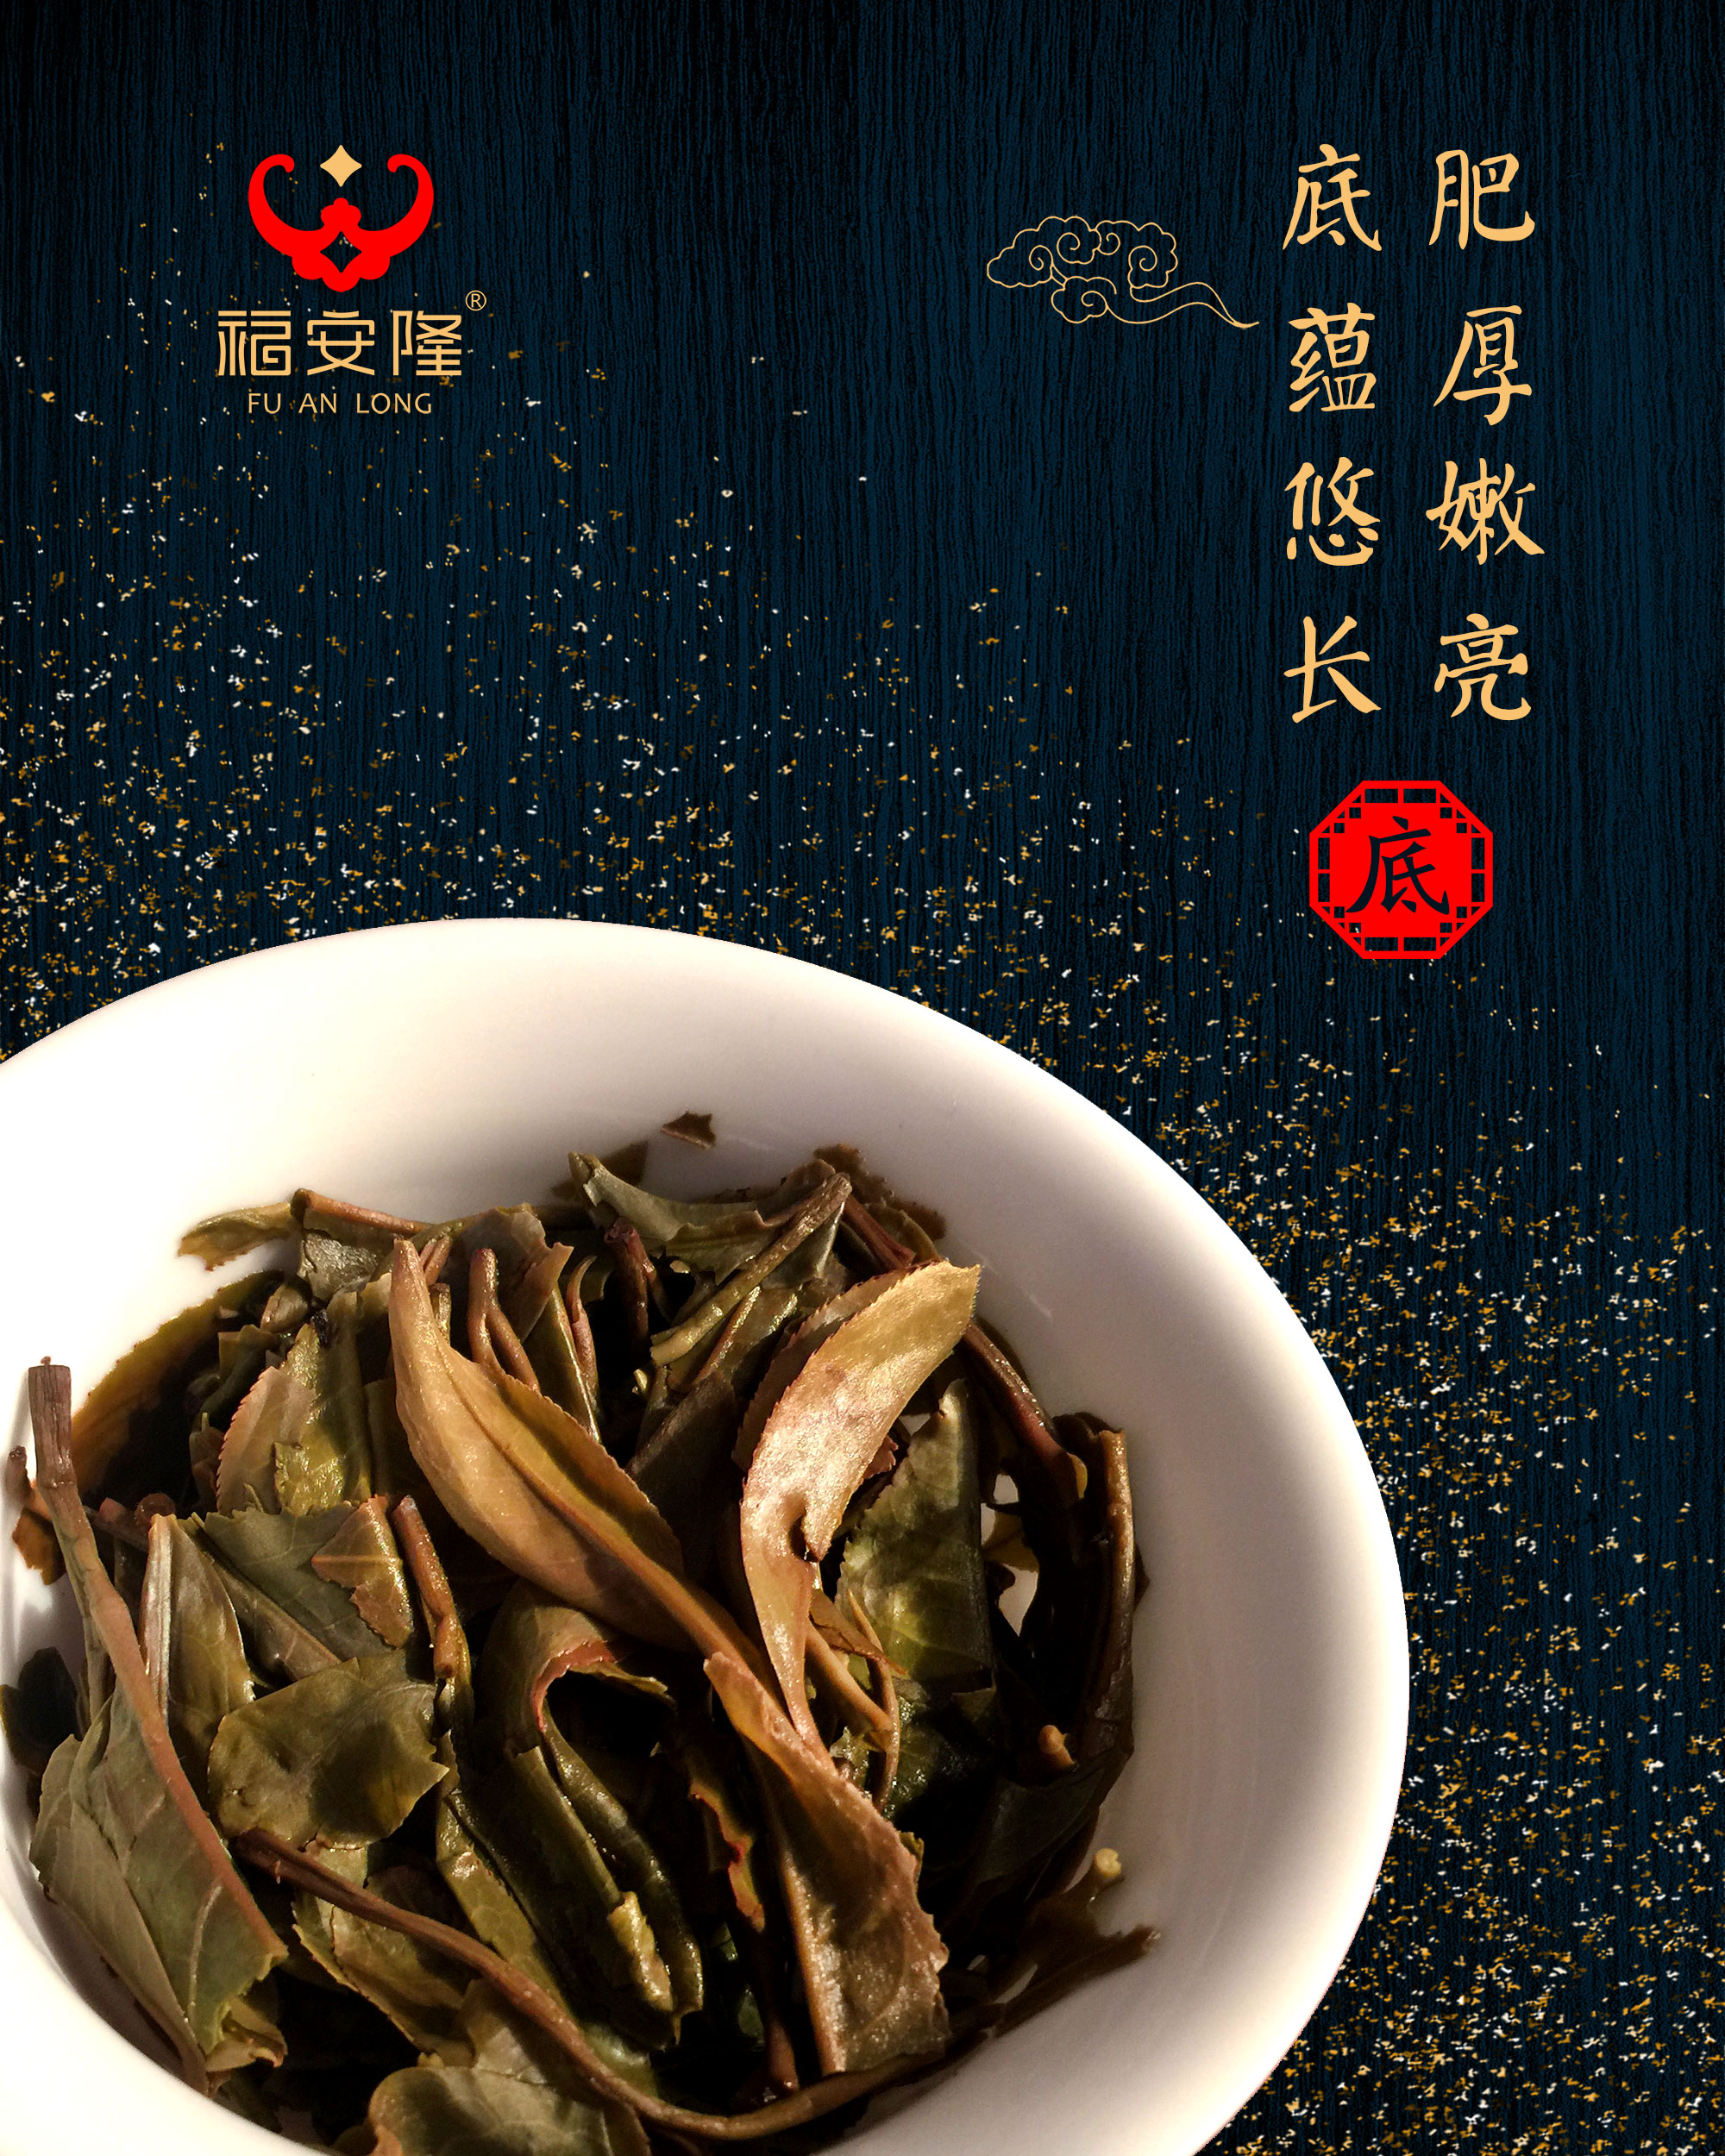 福安隆五星连缀，百福齐臻，这是今年压轴的“孔雀茶”！配图